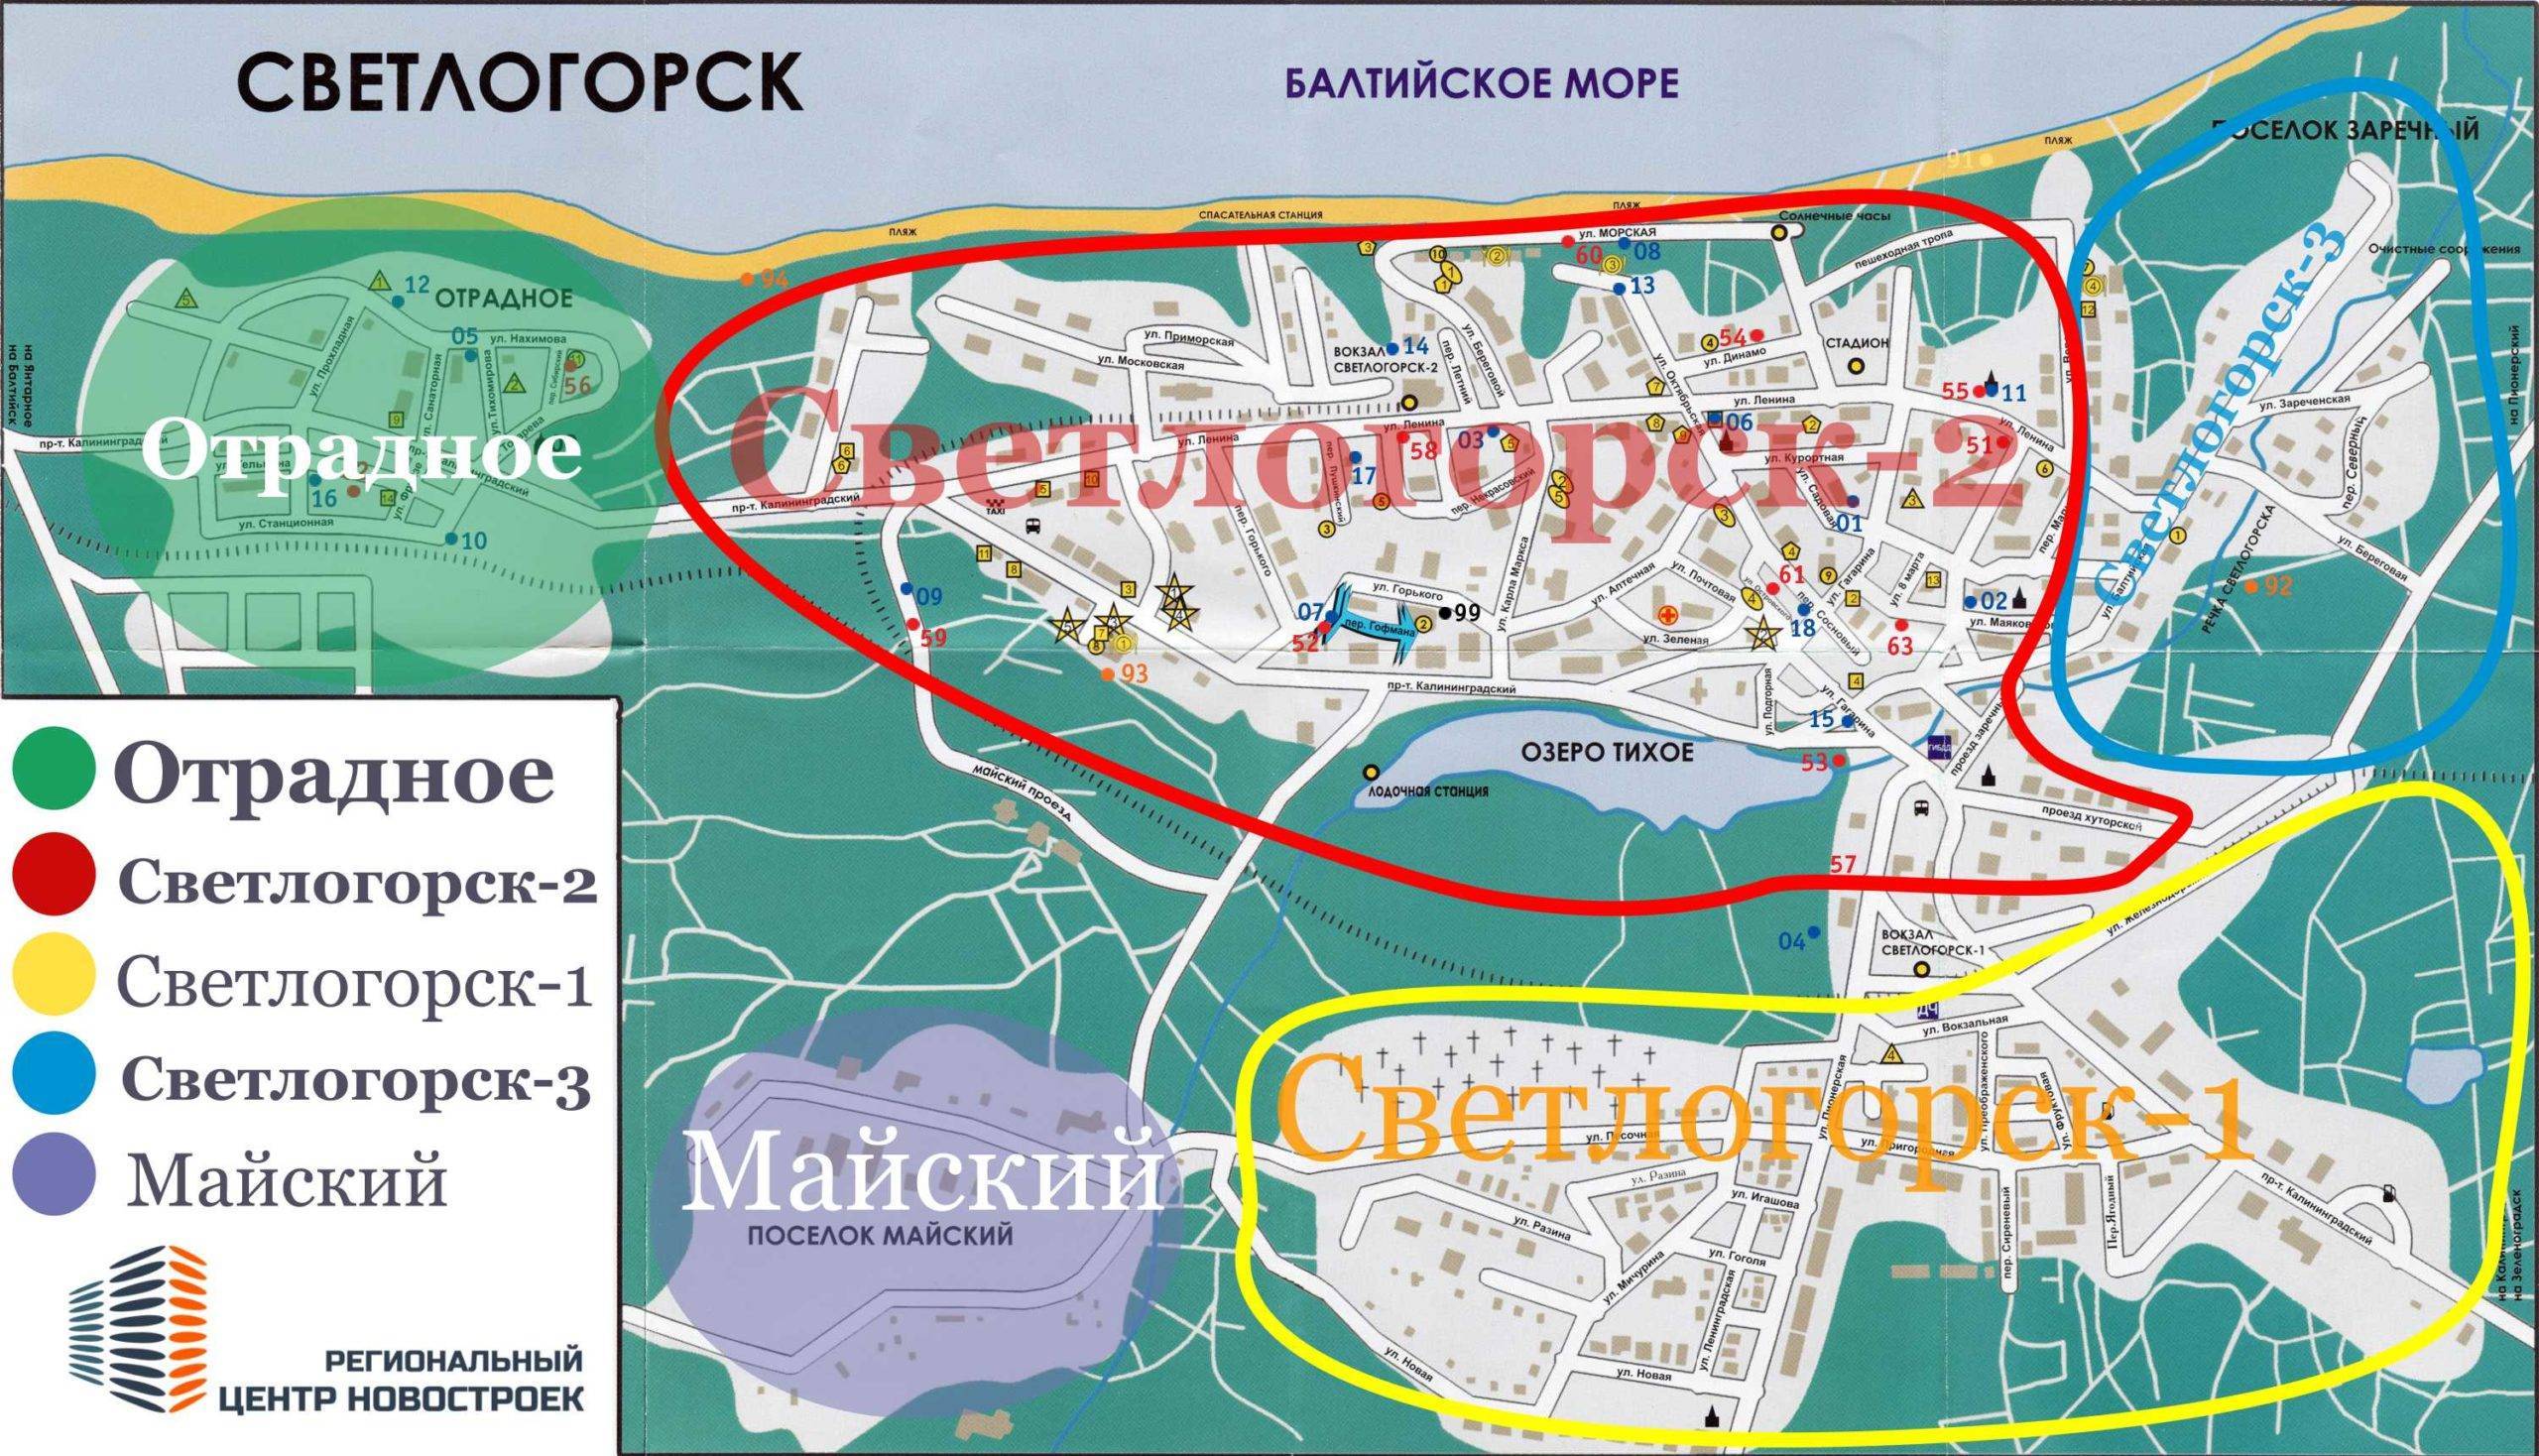 калининград достопримечательности на карте с описанием